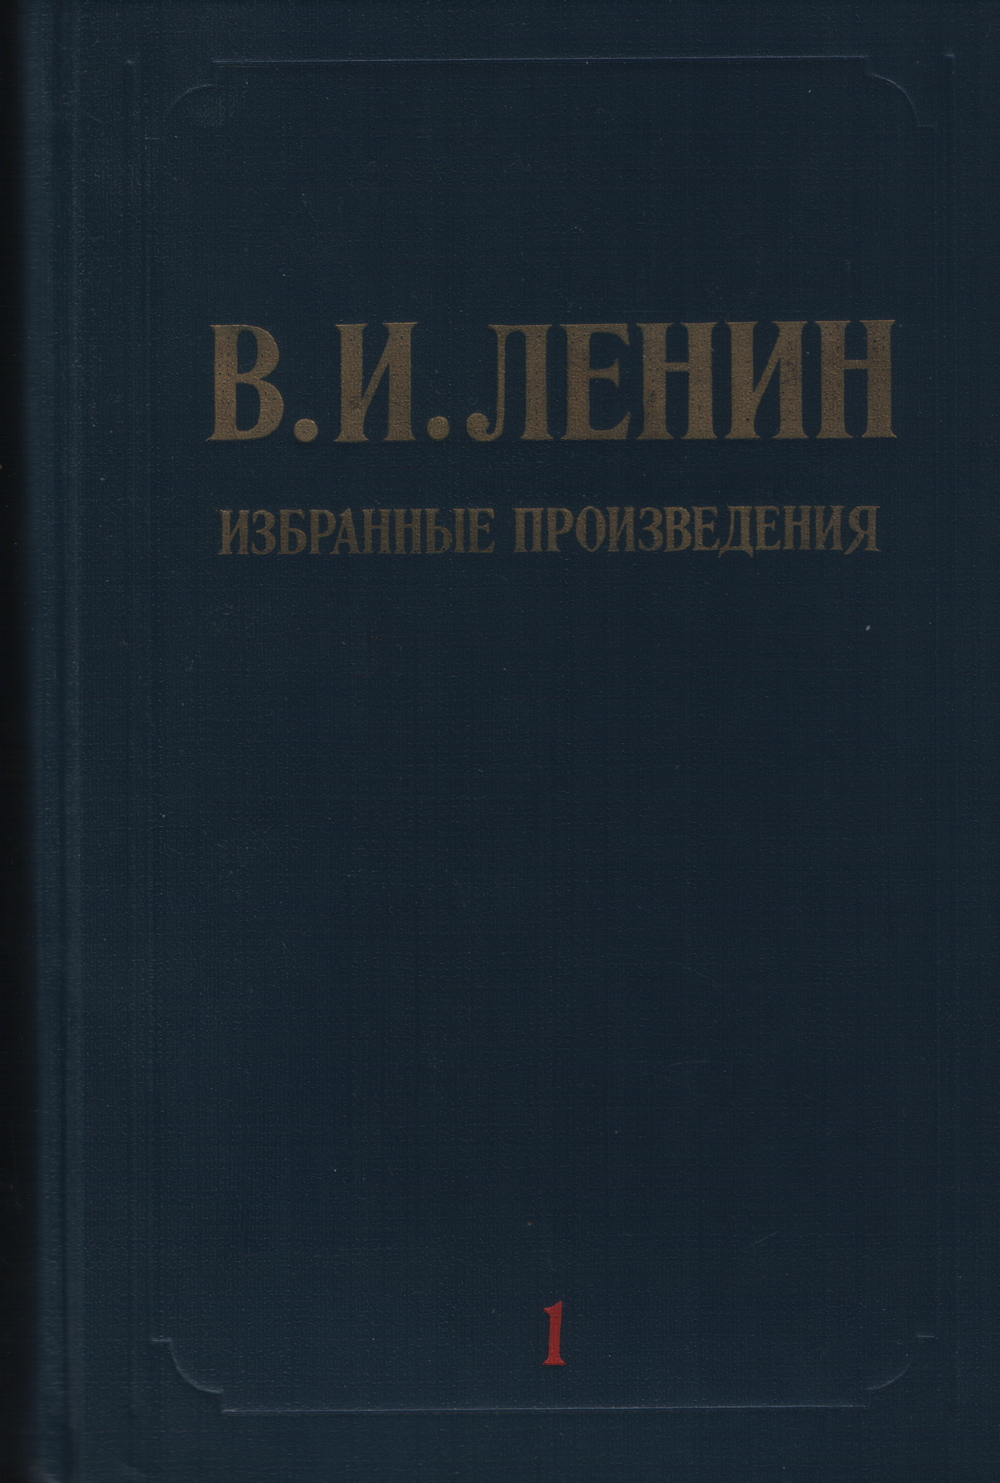 Избранные произведения в 3 томах. Том 1 (1897-сентябрь 1916)